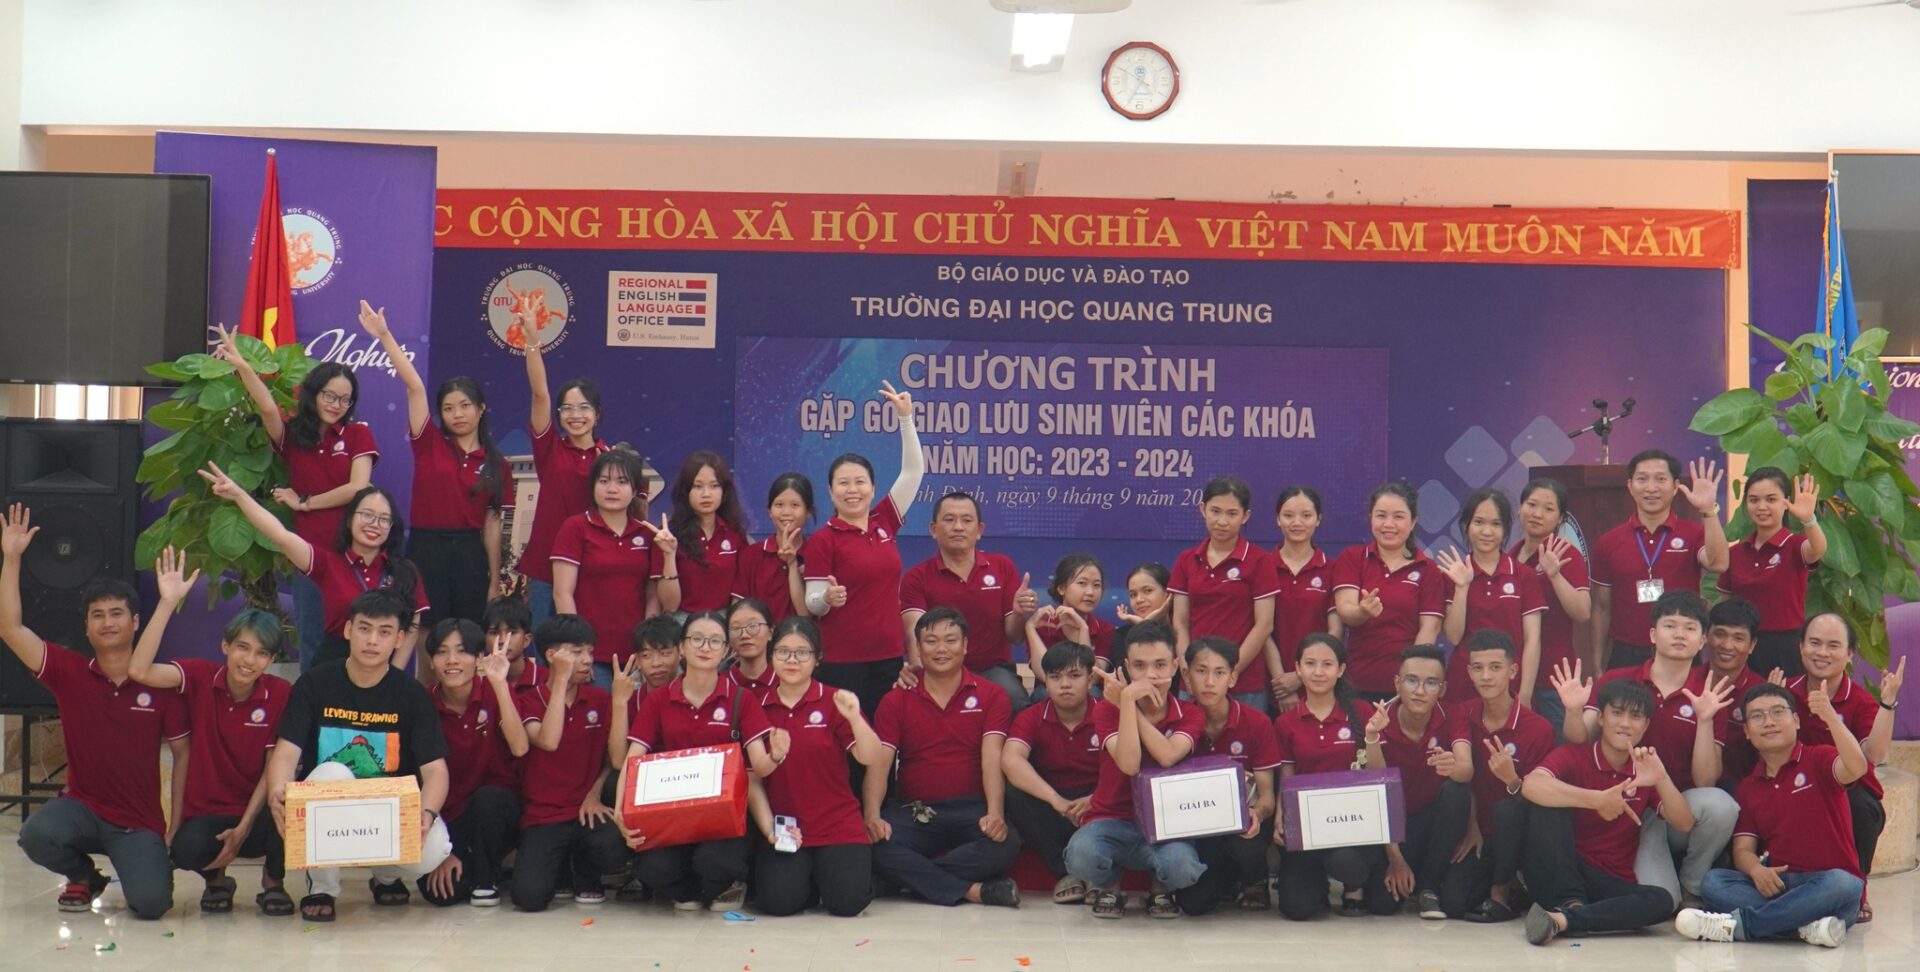 Trường Đại học Quang Trung tổ chức chương trình gặp gỡ giao lưu sinh viên các khóa năm học 2023 - 2024